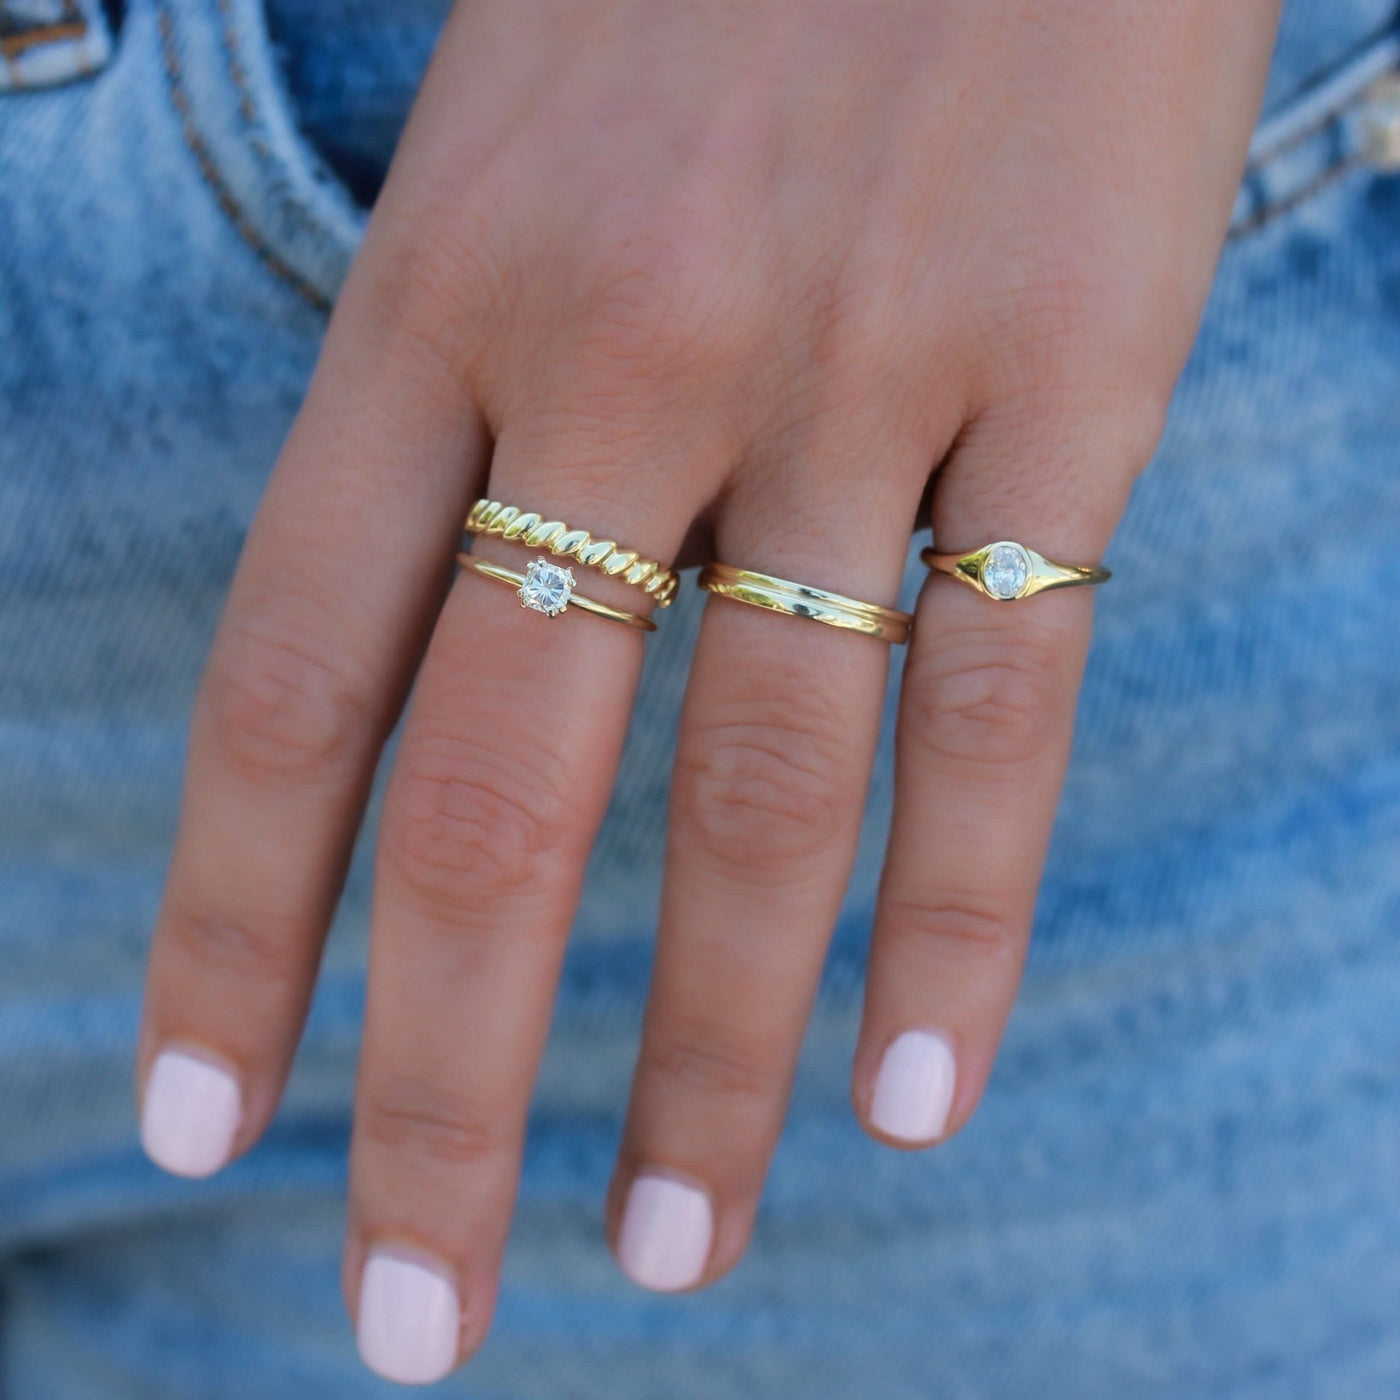 Lyon Ring 14K Gold White Diamond Rings 